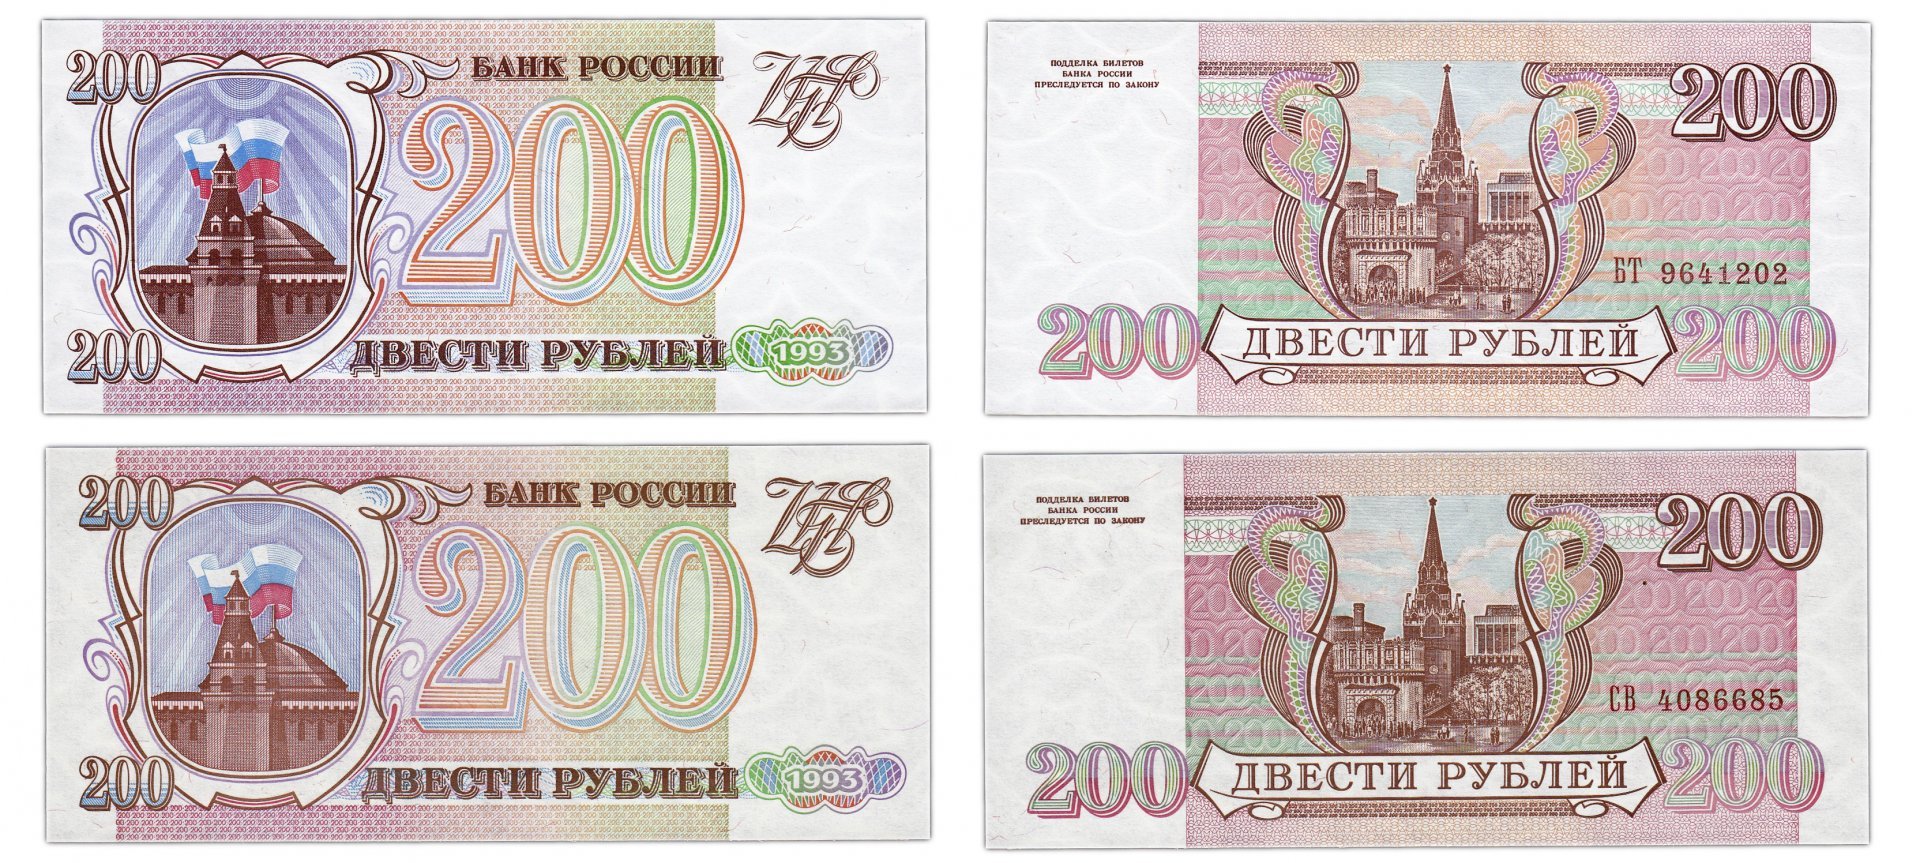 Купюры рубли распечатать. Игровые банкноты для распечатки. Рубли купюры для печати. Бумажные российские деньги для детей. Рубли для печати.